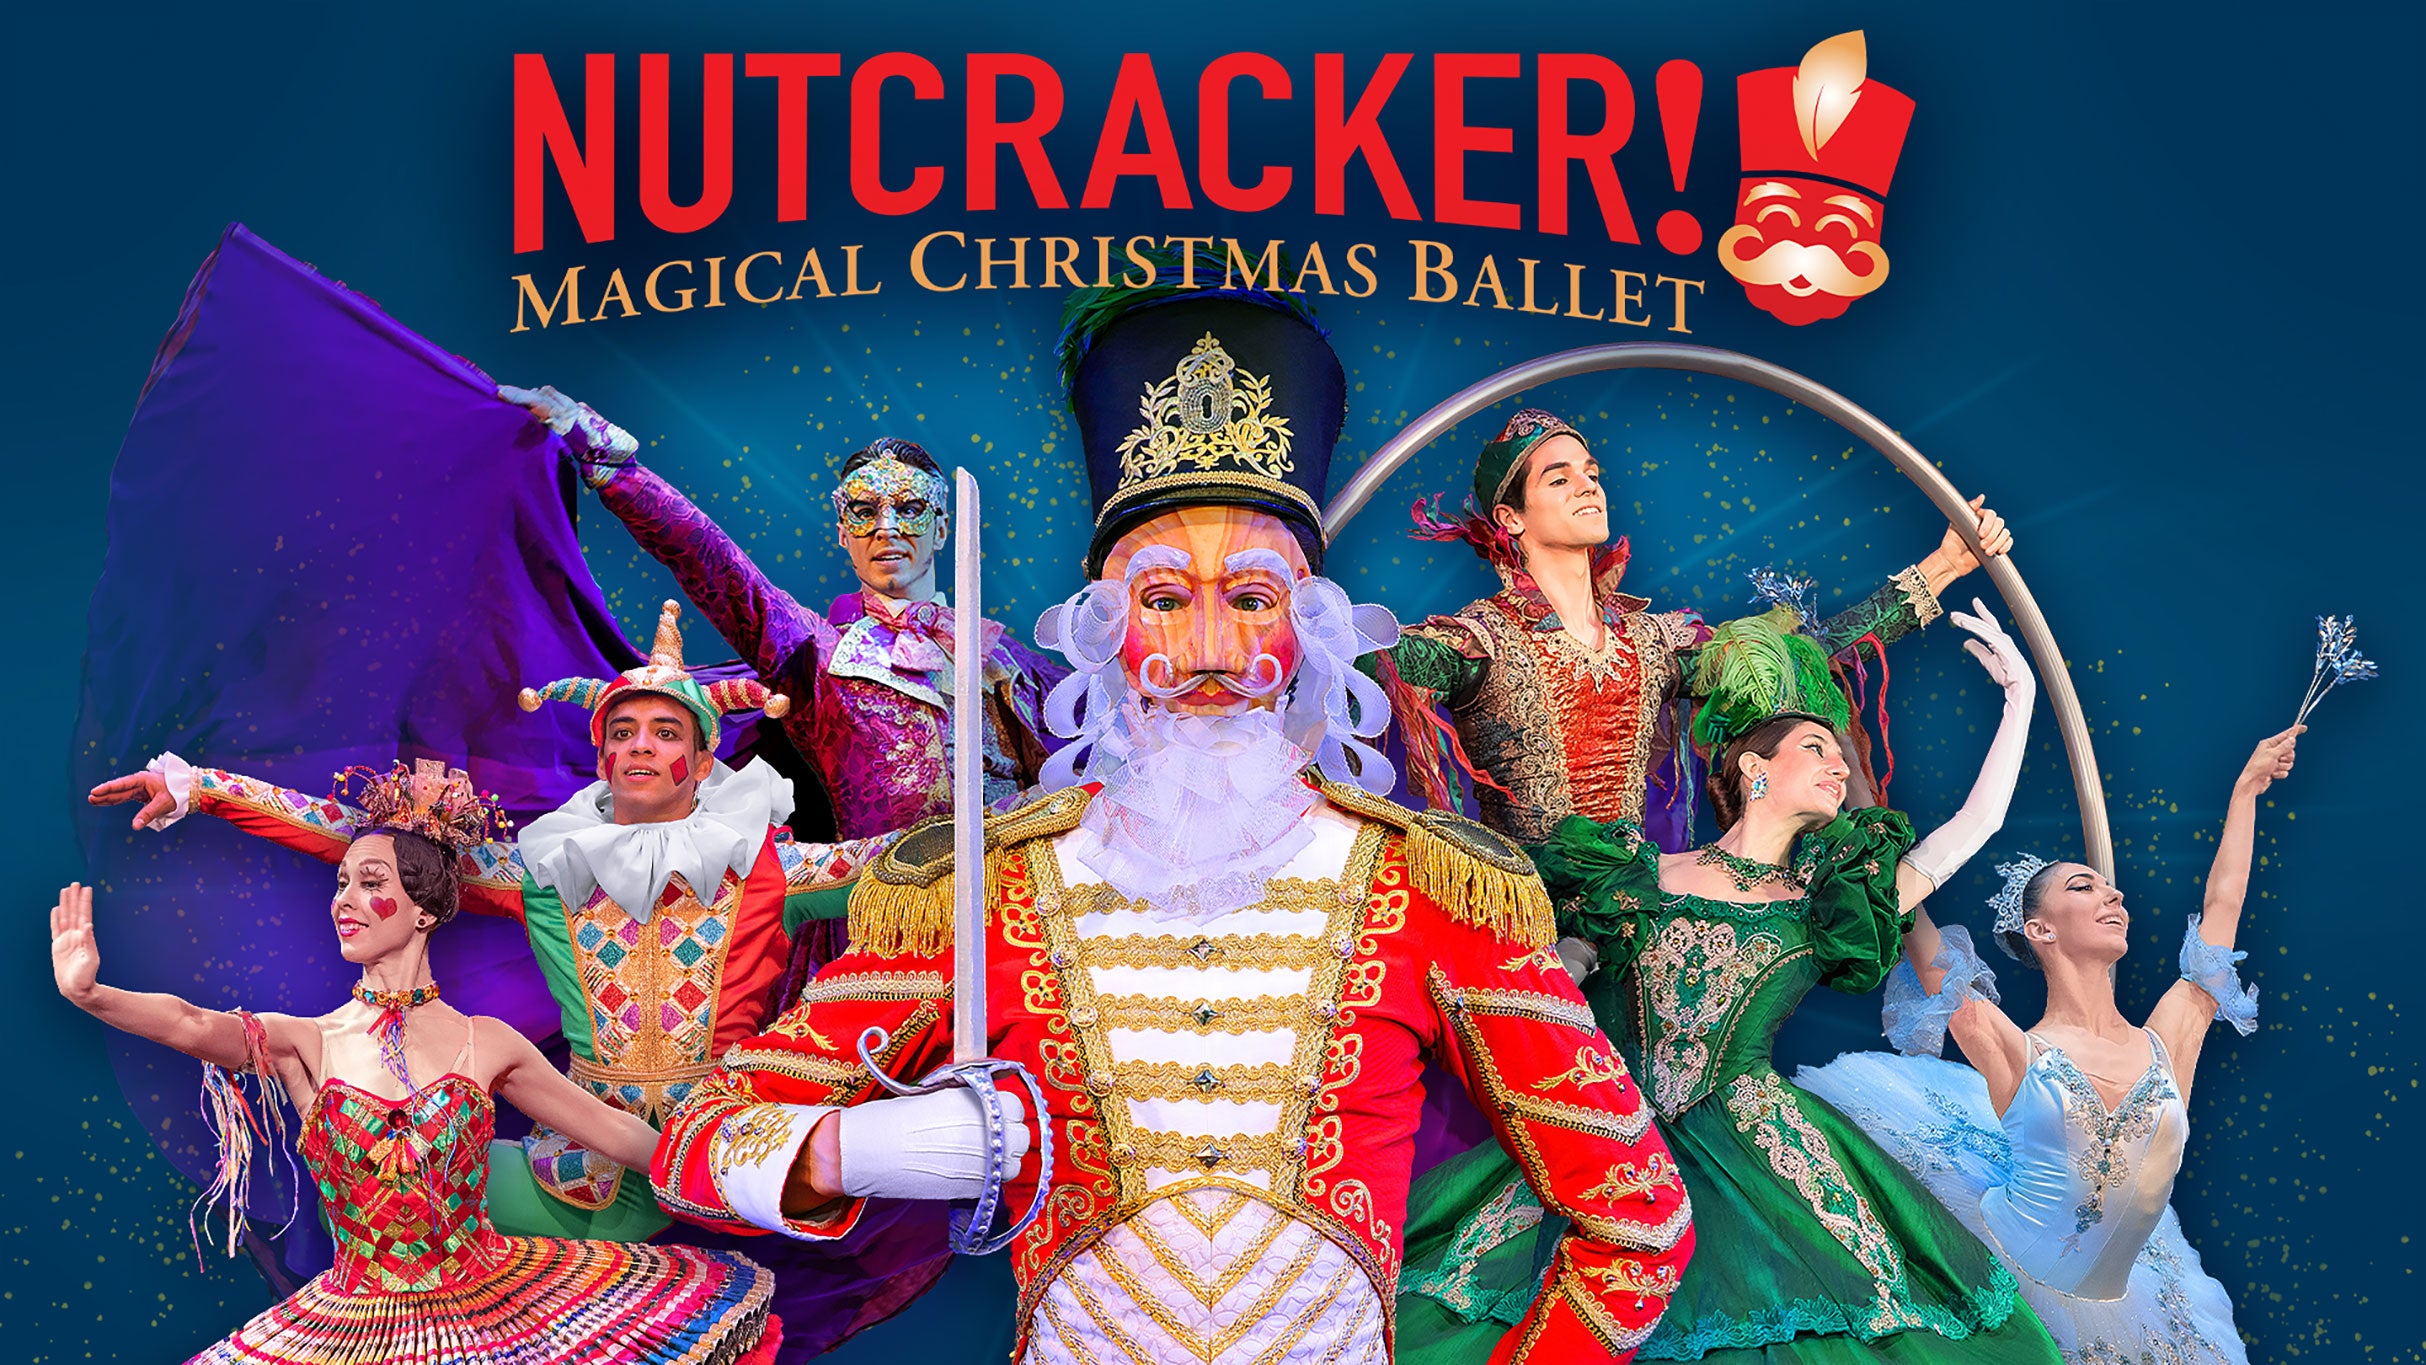 NUTCRACKER! Magical Christmas Ballet pre-sale password